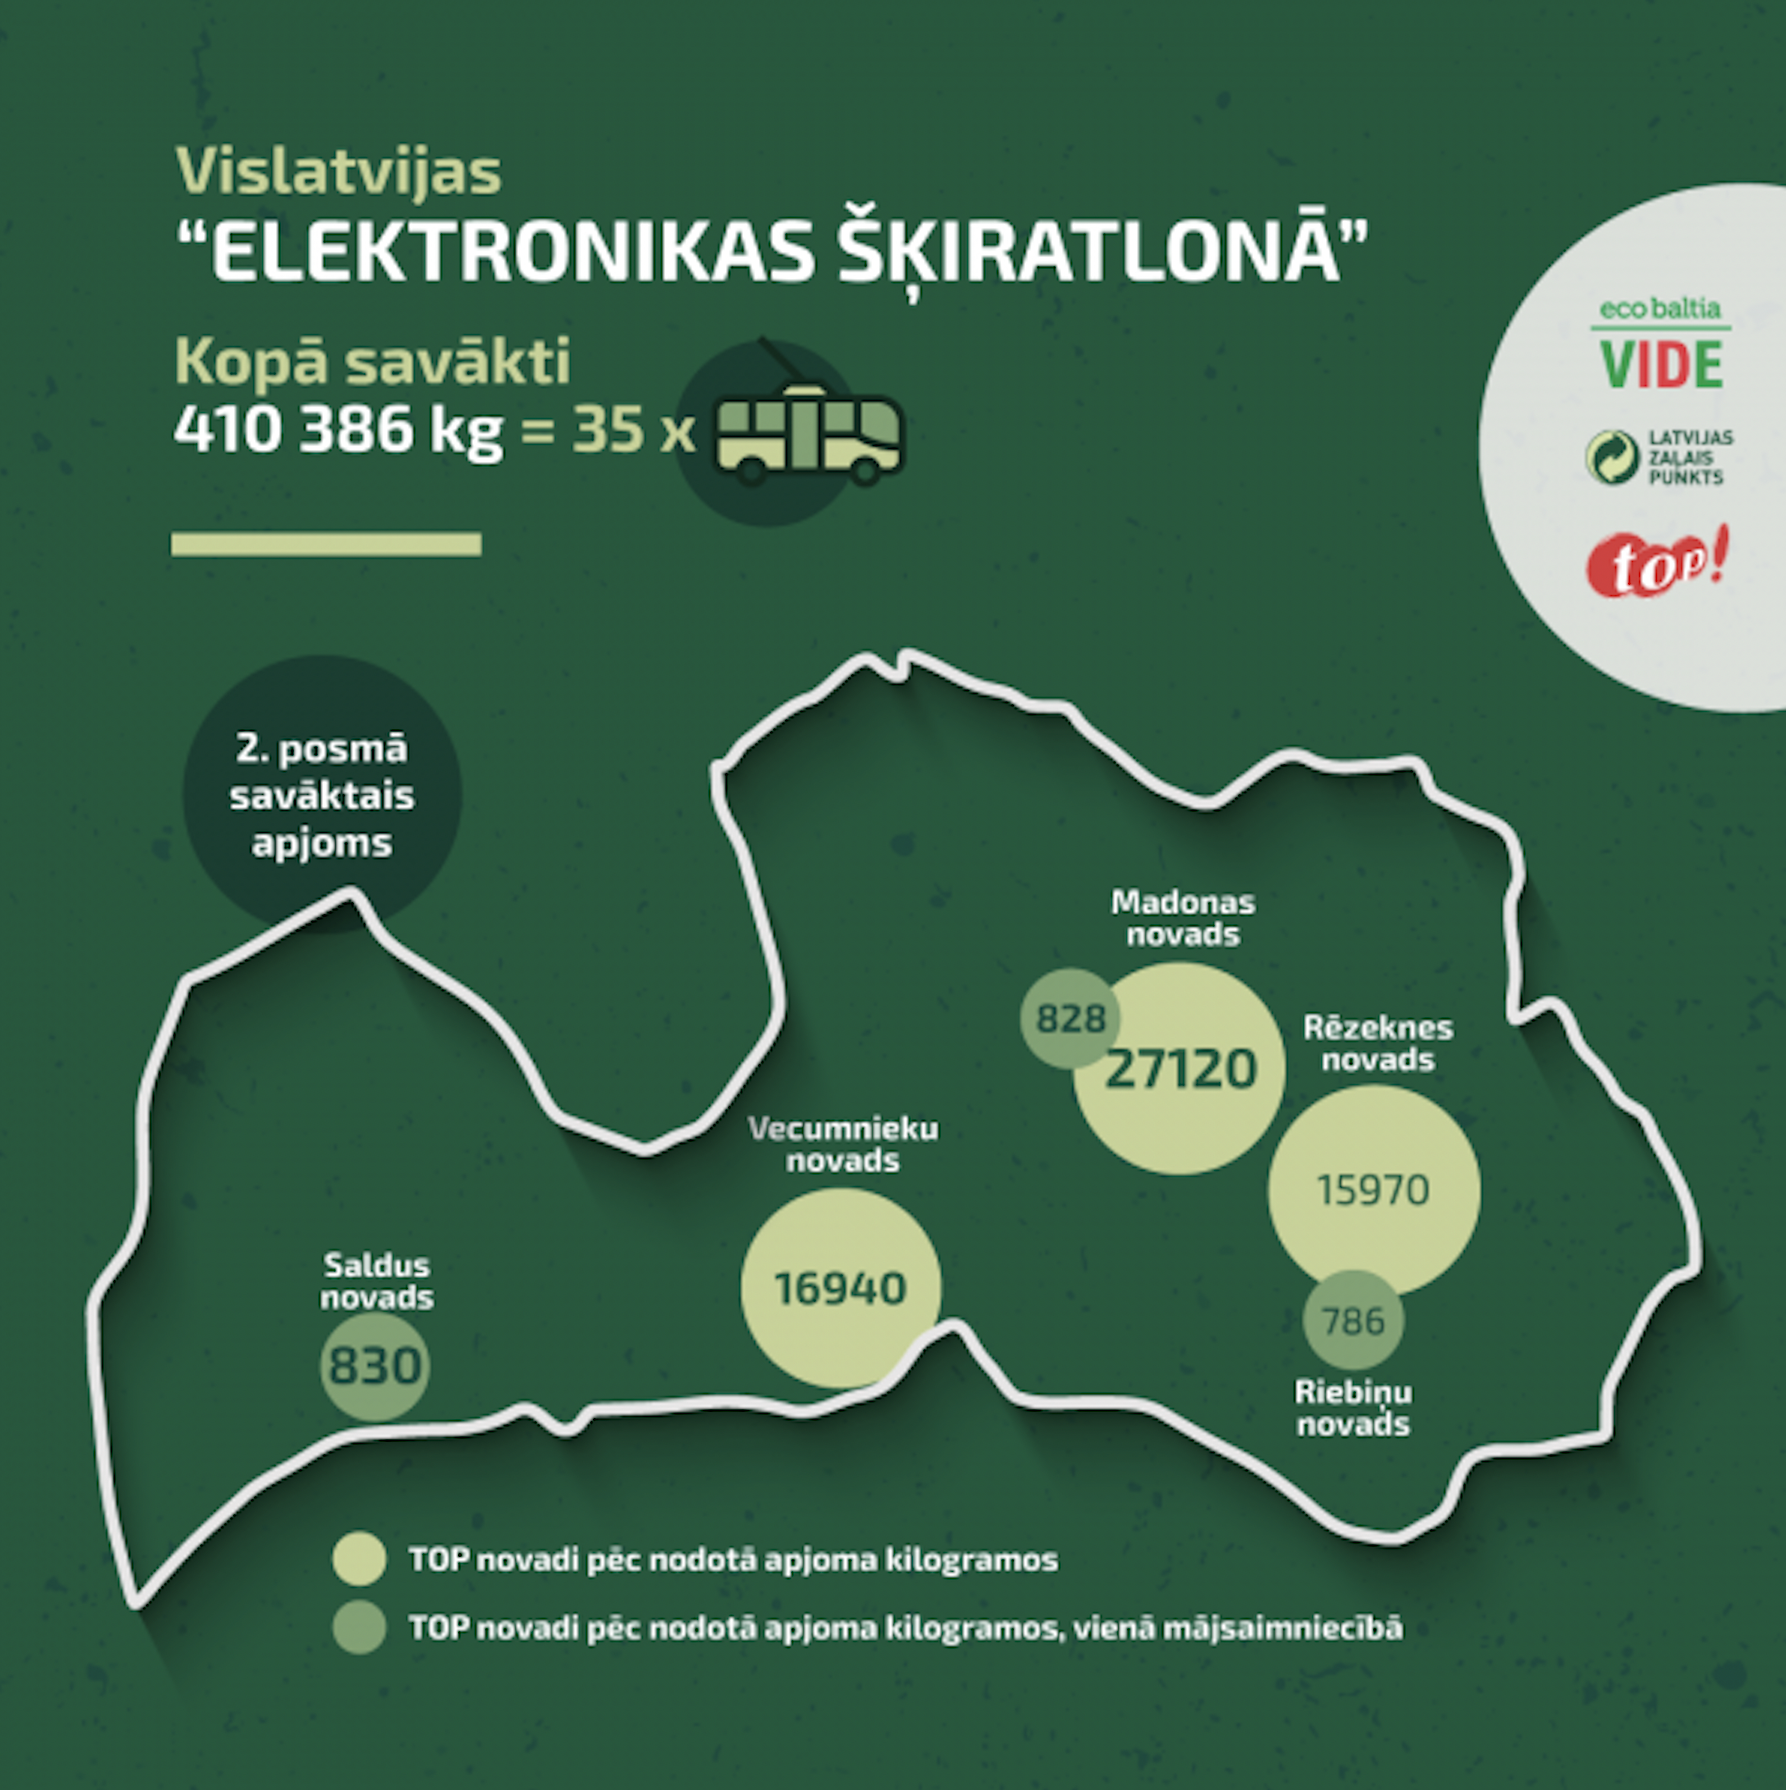 В ходе Вселатвийской кампании “Elektronikas šķiratlons” (“Электронный хламотрон”) собрано 410 386 килограммов электротехнических отходов